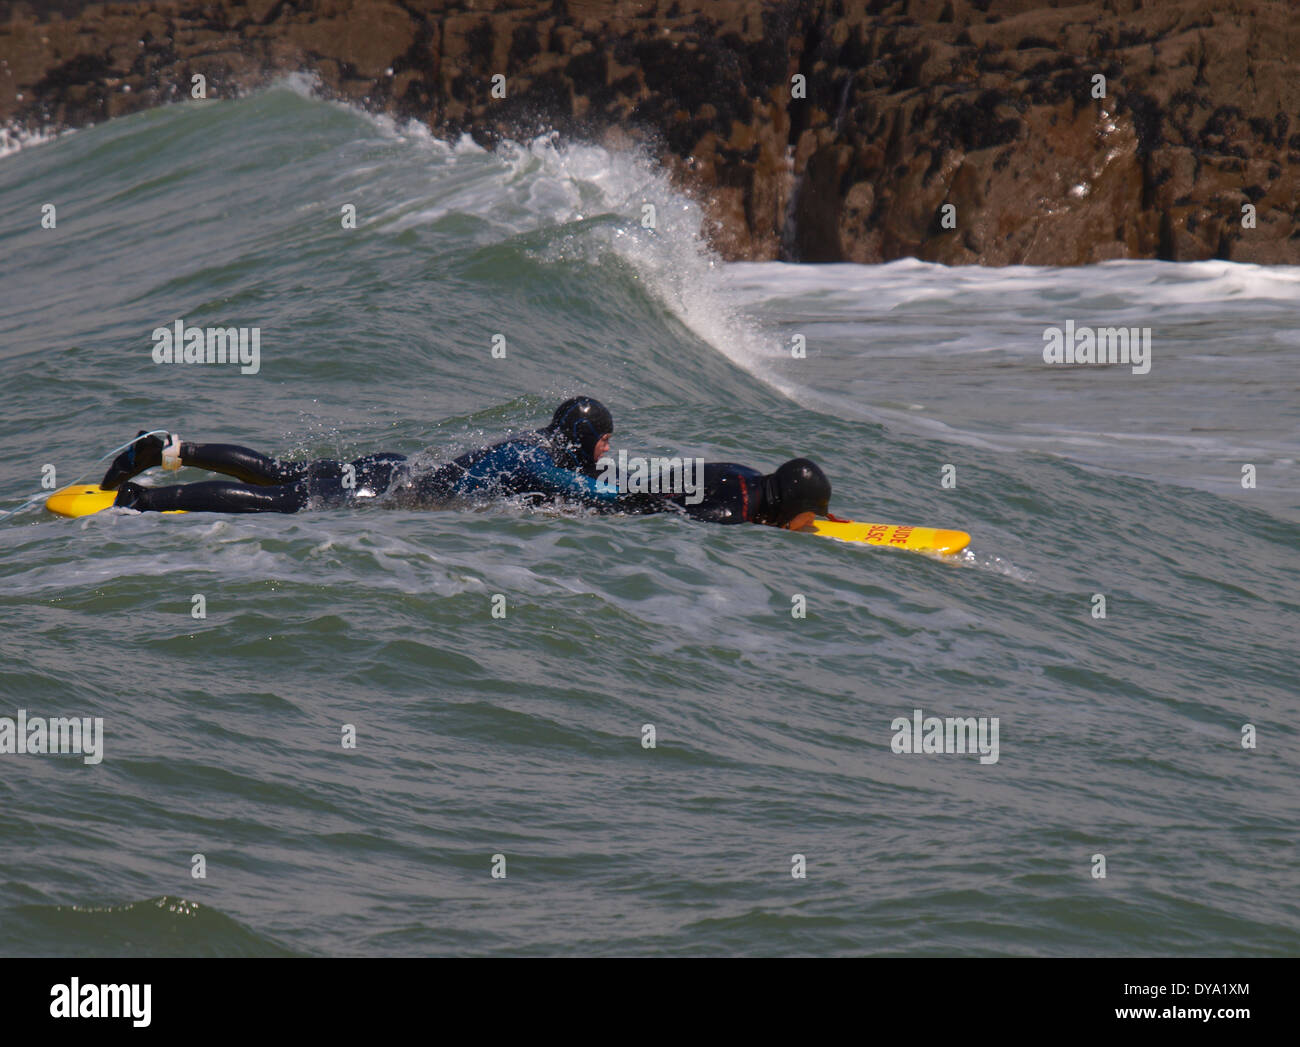 Surf rescue training, Bude, Cornwall, UK Stock Photo